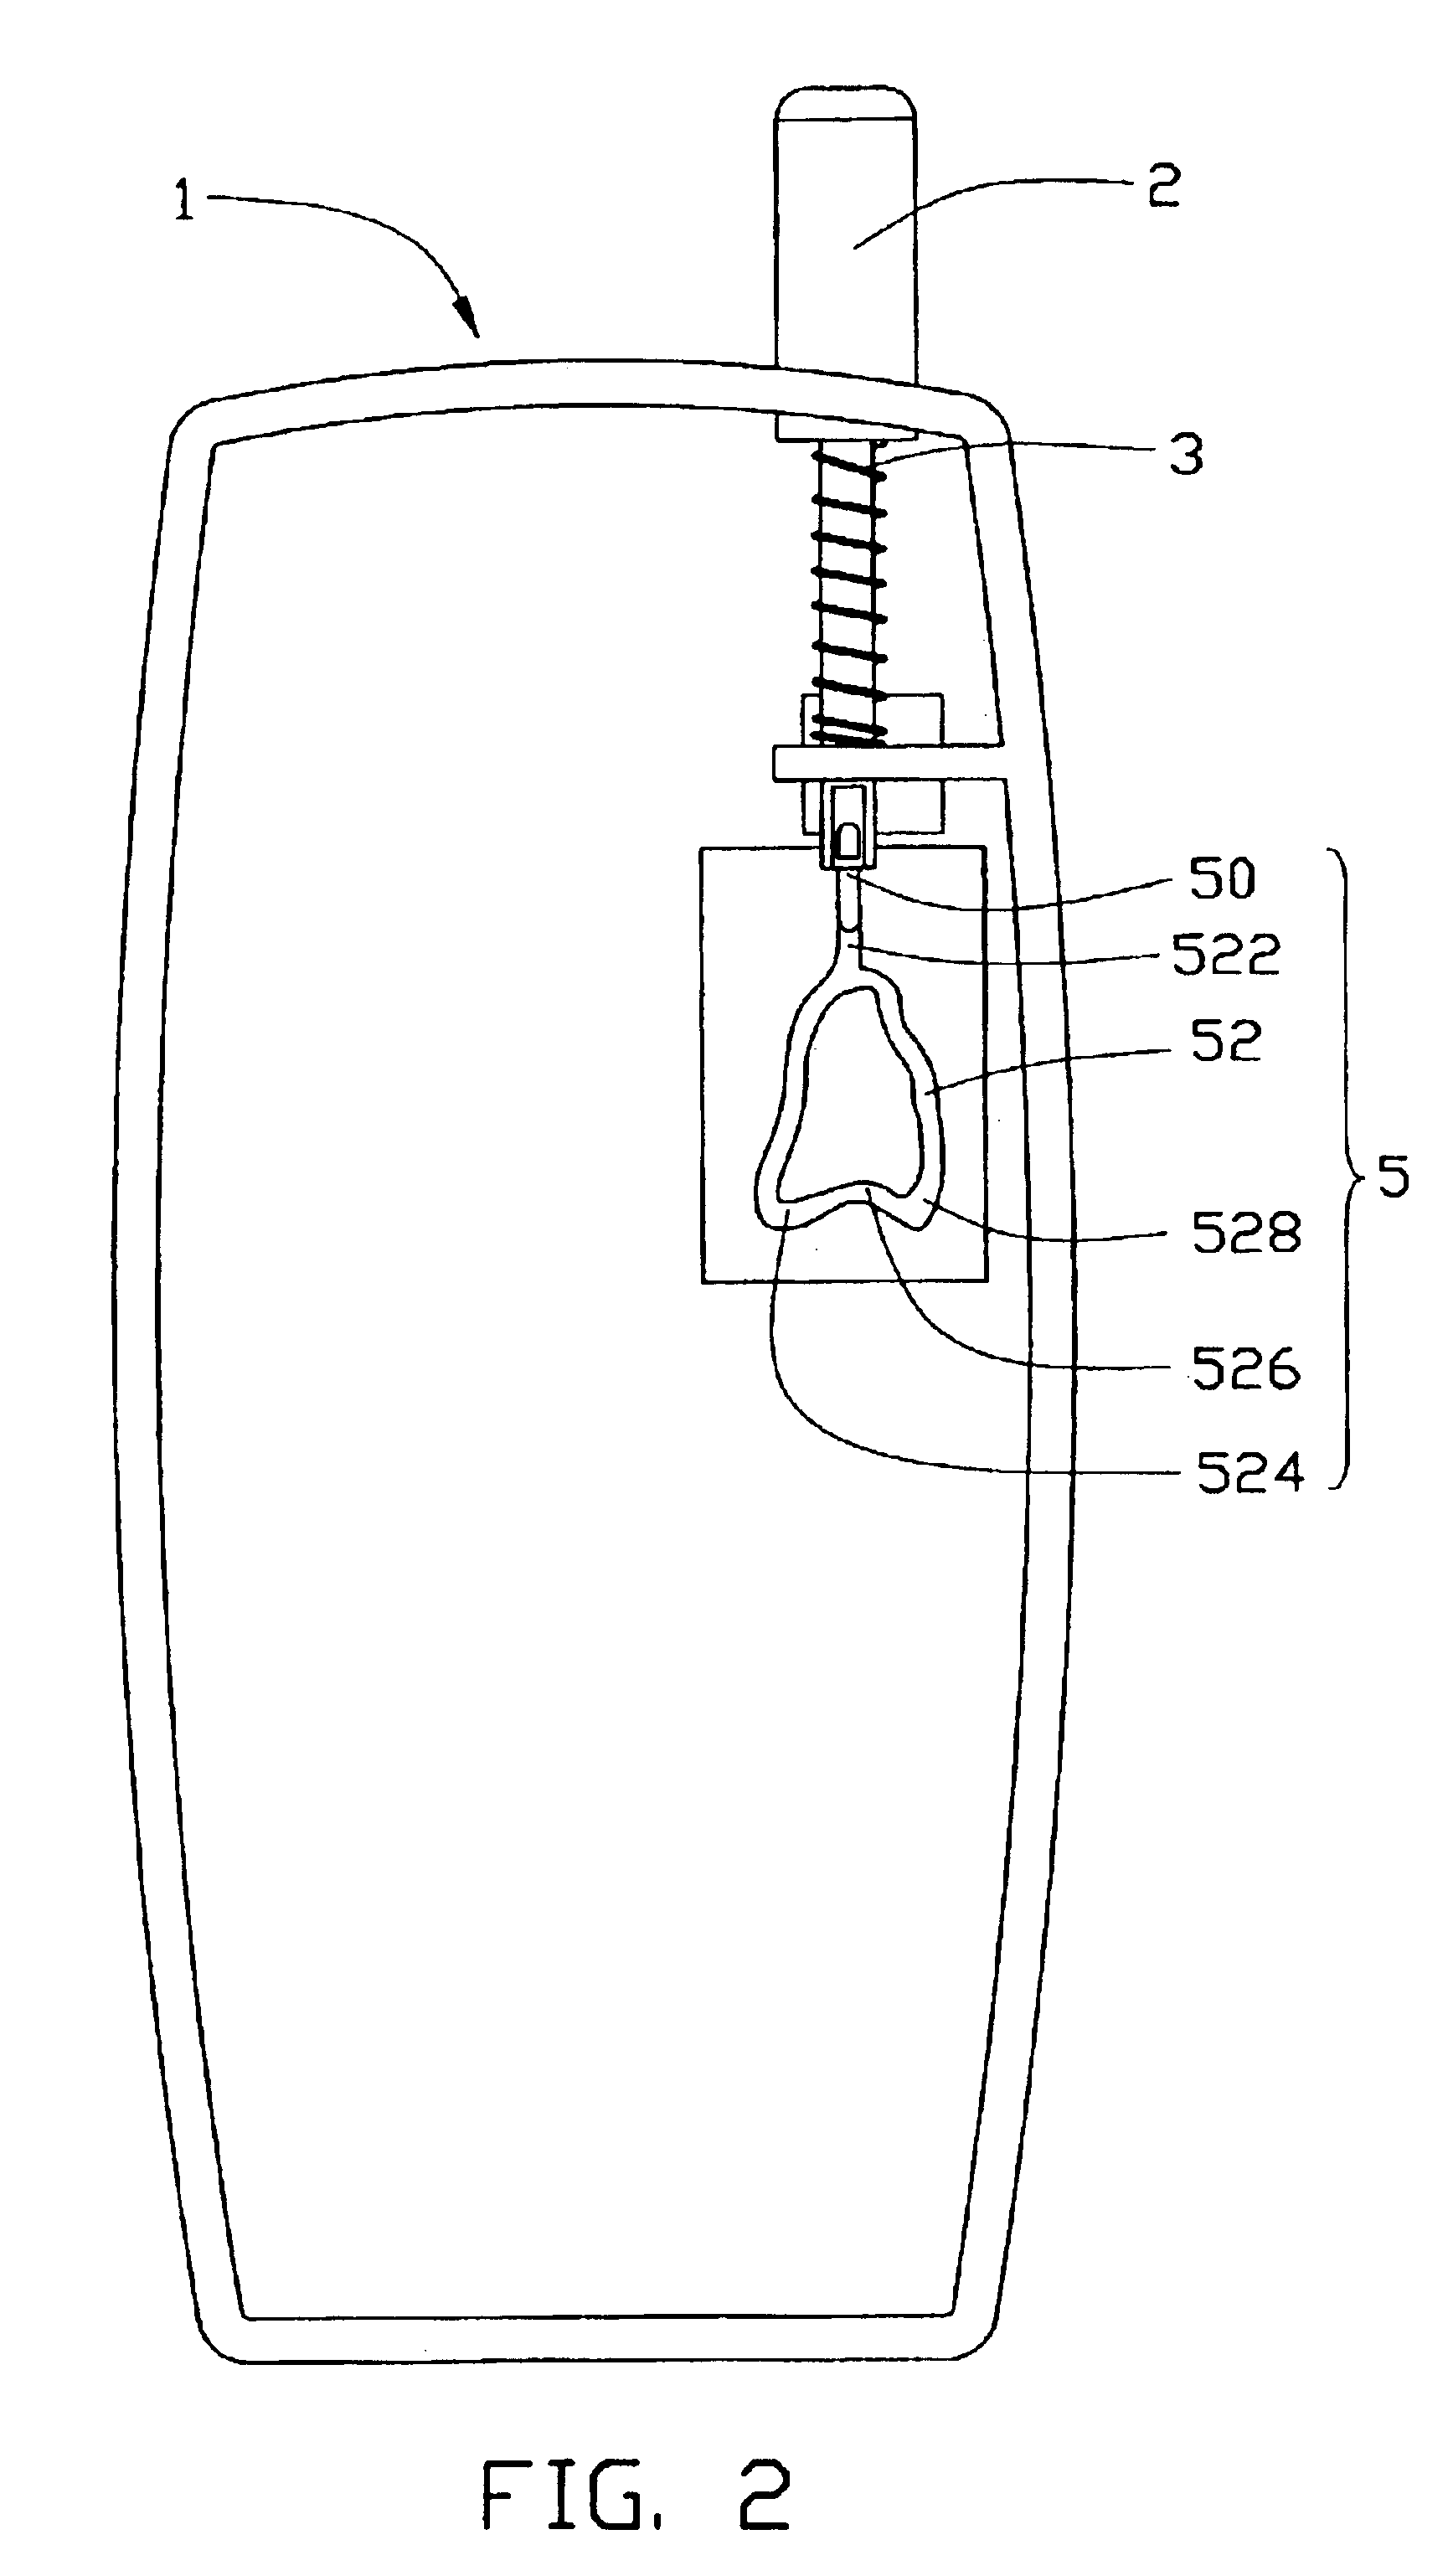 Retractable antenna module